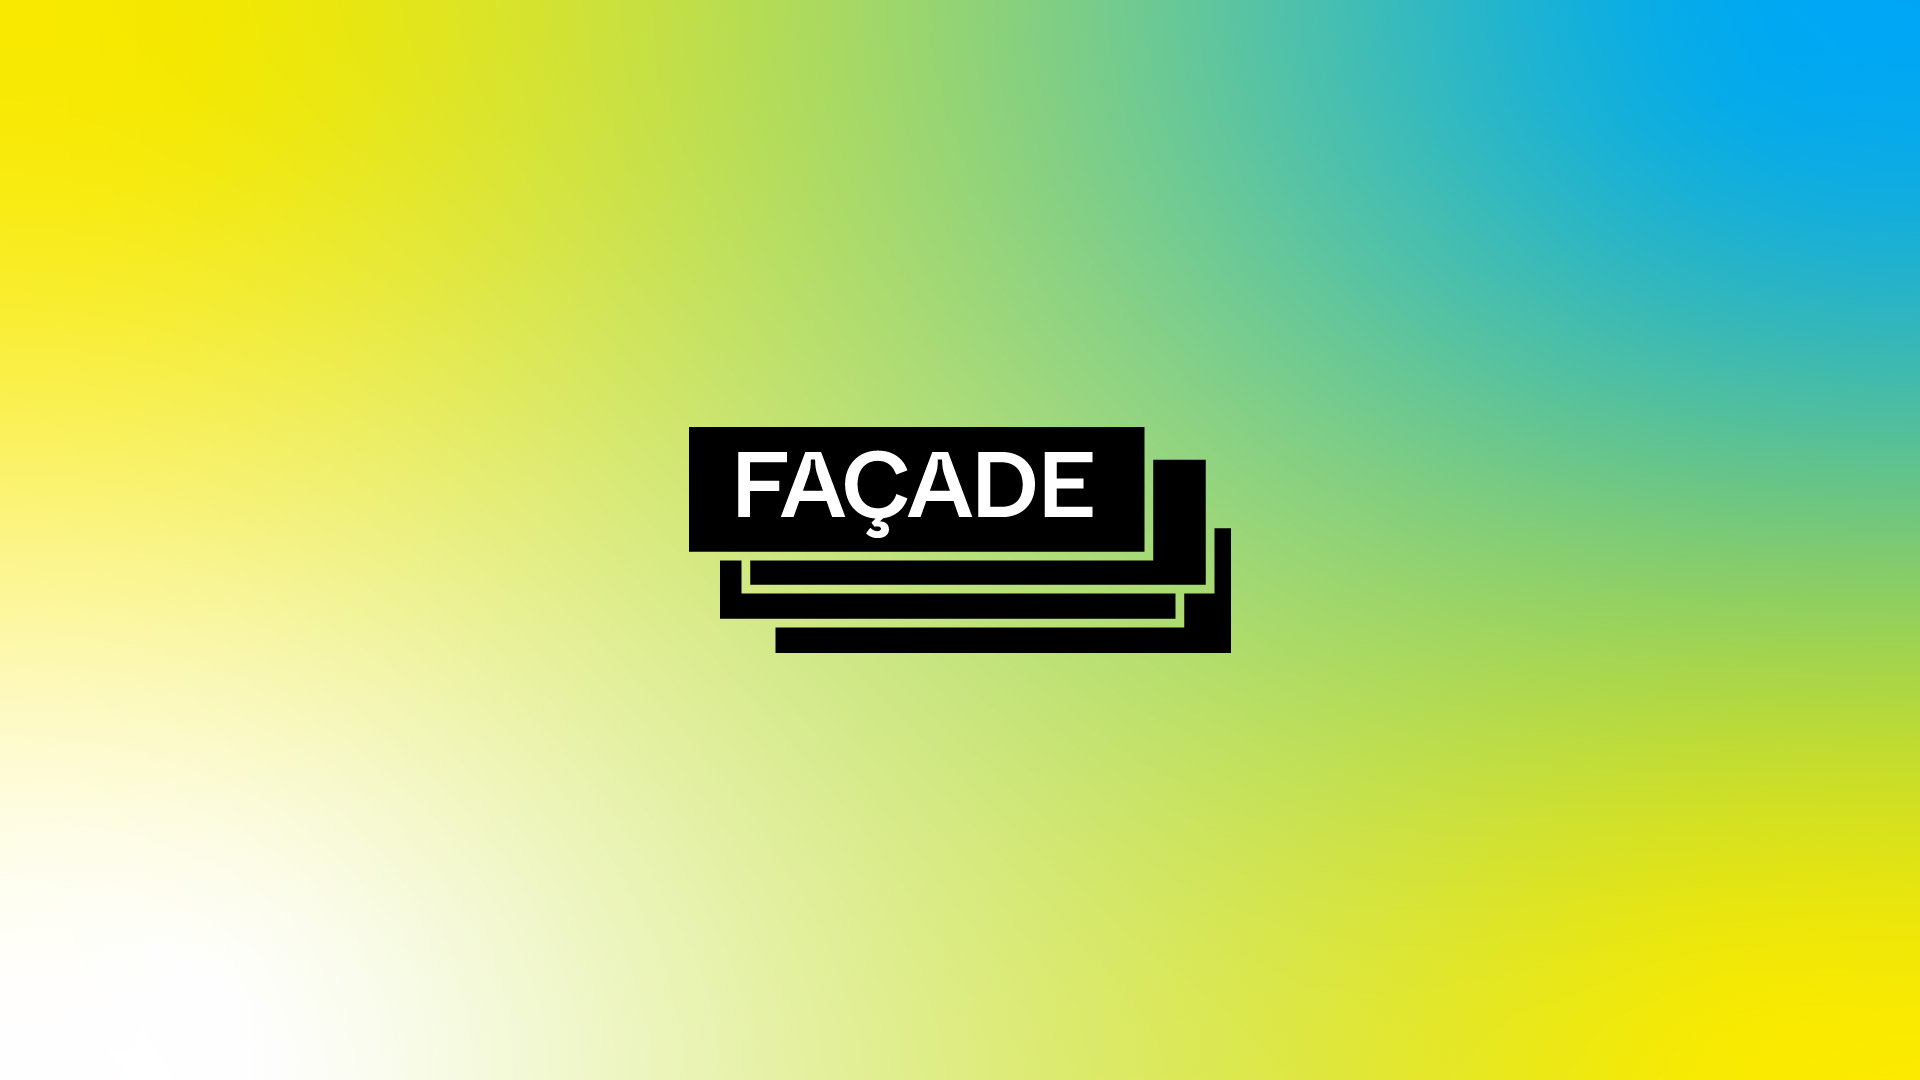 Façade logo and banner